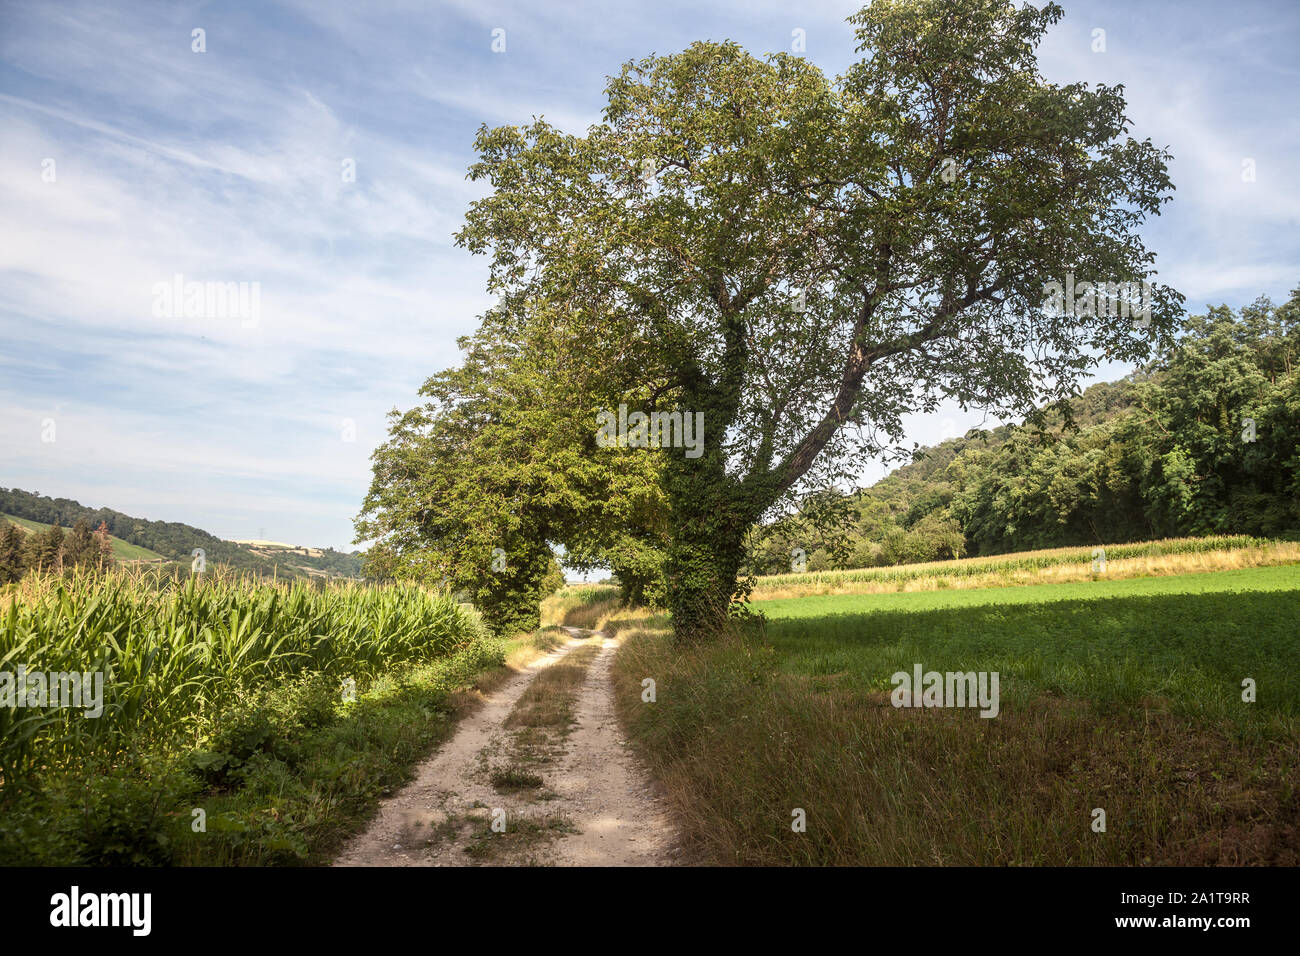 Typisch französische dirt road, einen Weg in die Landschaft von Frankreich, mit Pflanzen und Felder bereit, in einem landwirtschaftlich genutzten Gebiet des Landes duri geerntet zu werden. Stockfoto